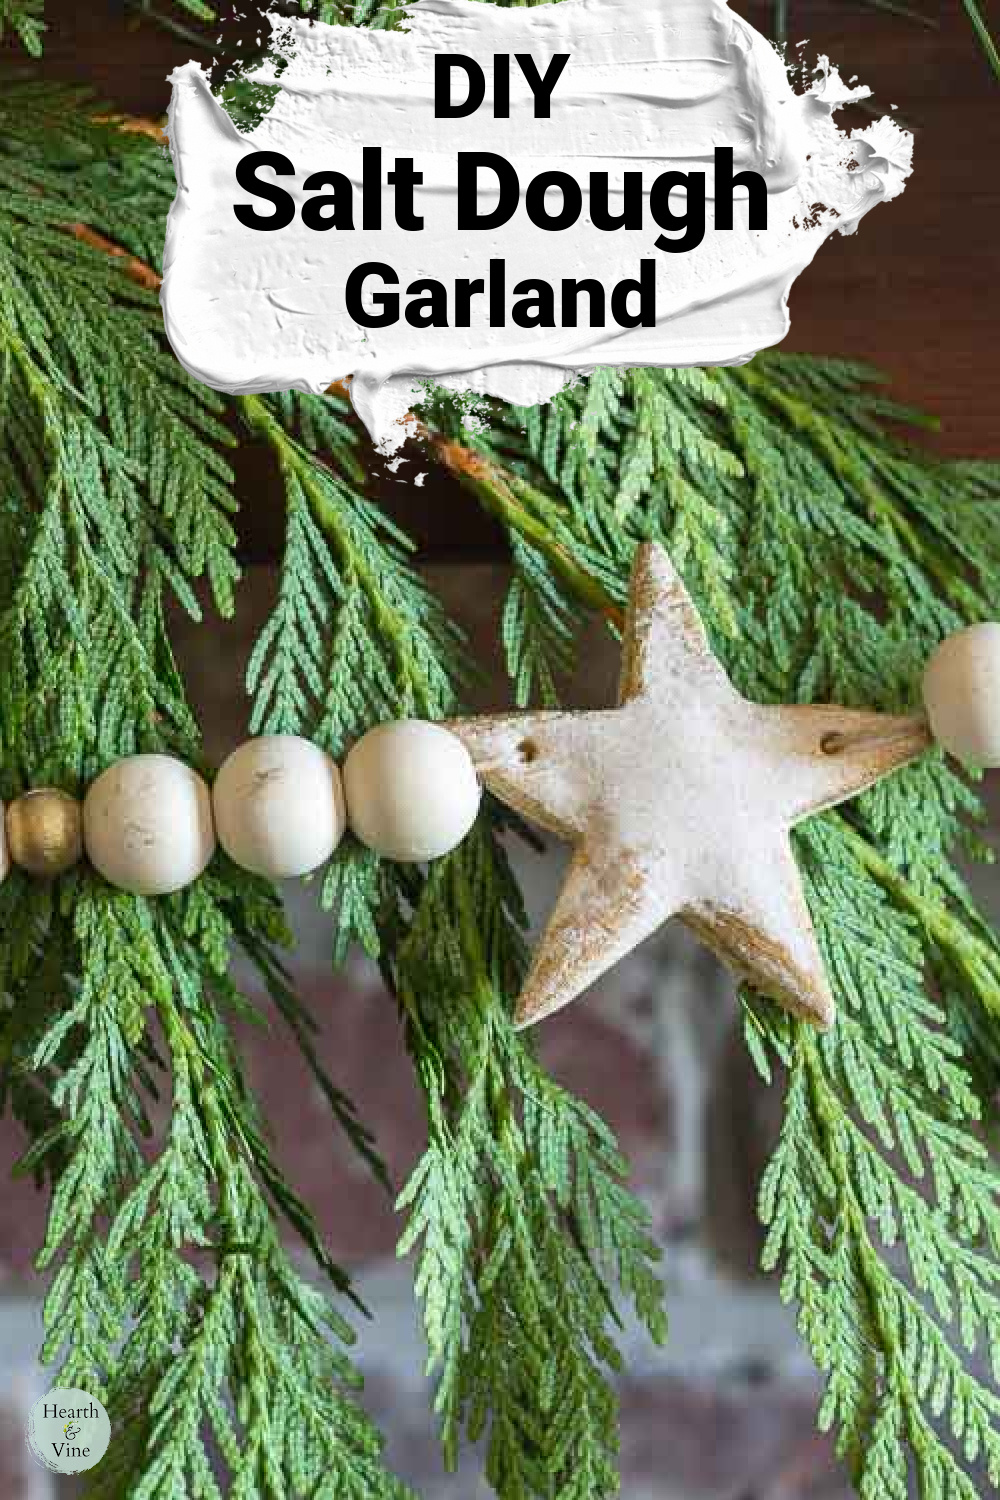 Star salt dough garland with wooden beads on fresh cedar.